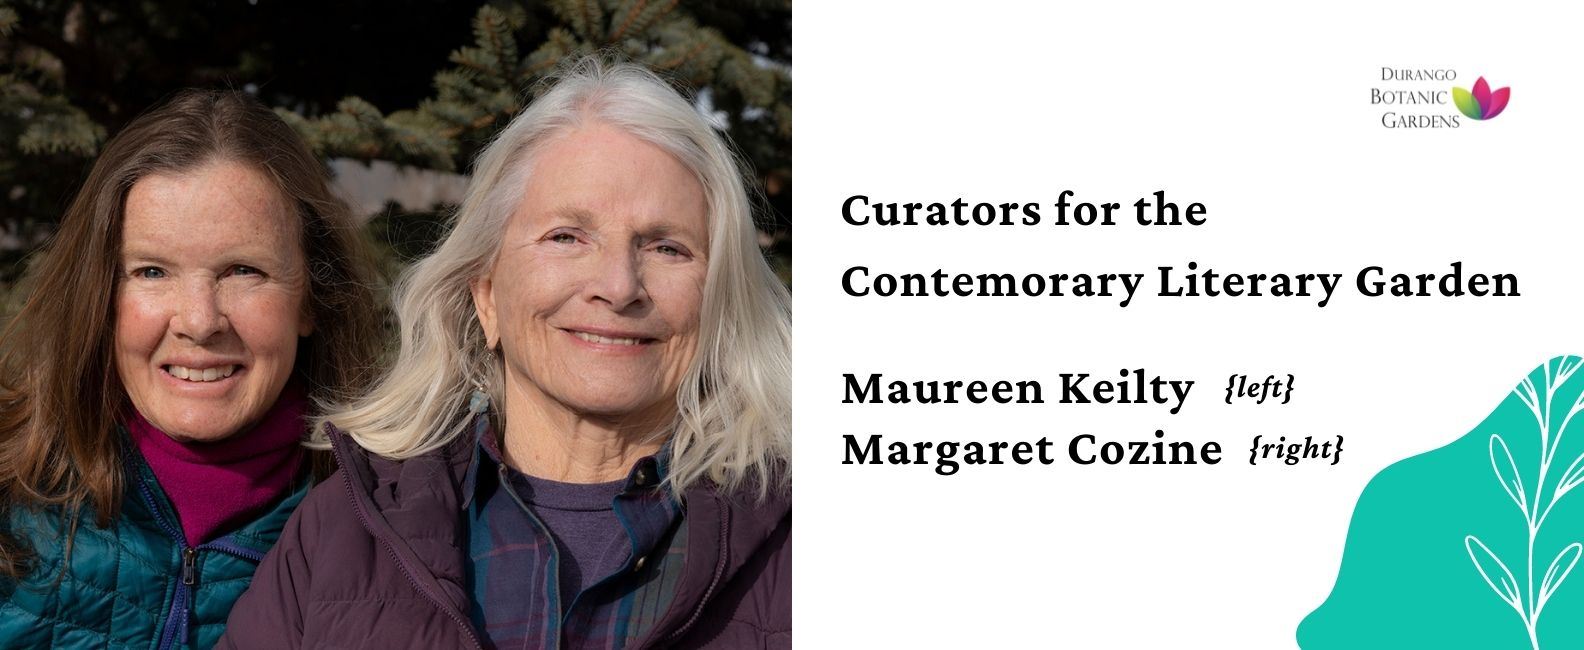 Curators, Maureen Keilty and Margaret Cozine